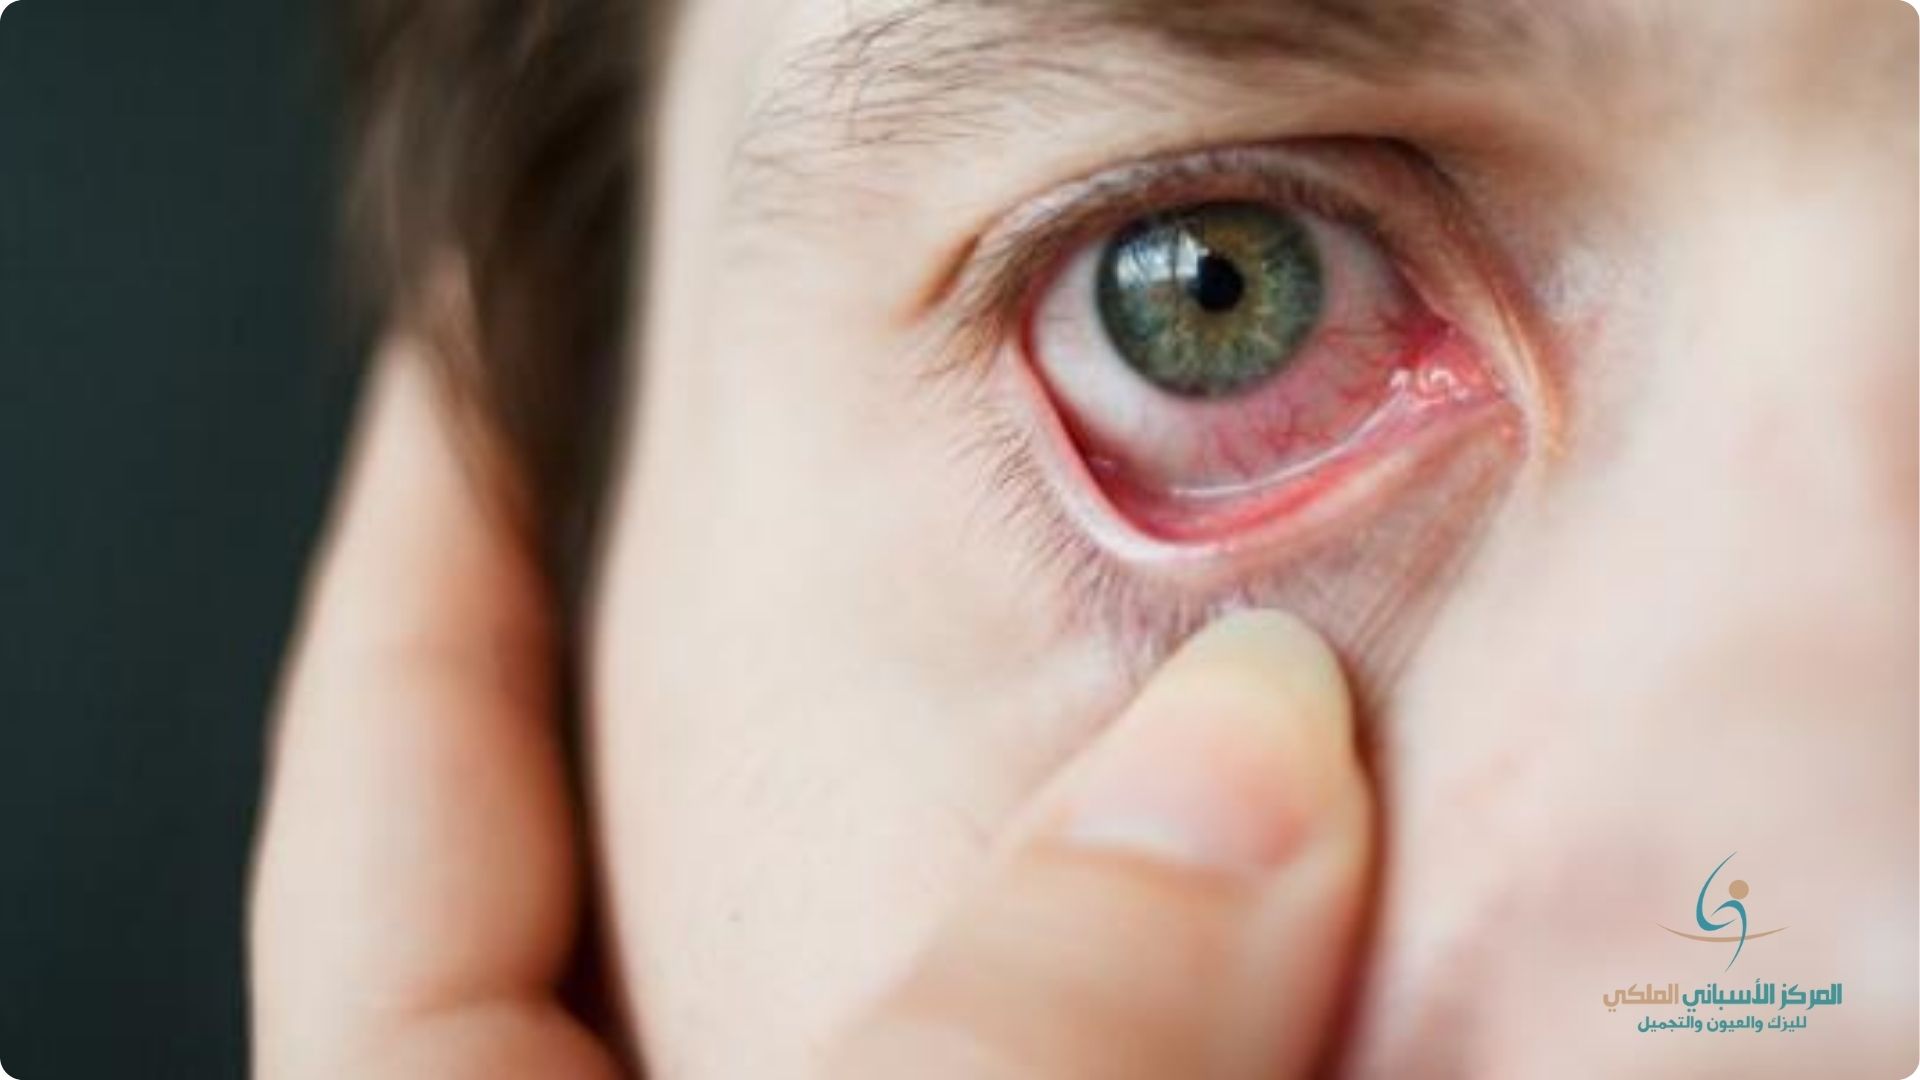 ما هو سبب الاحمرار المفاجئ في بياض العين؟ ومتى يُعتبر ذلك مؤشرًا على إصابة بمرض؟